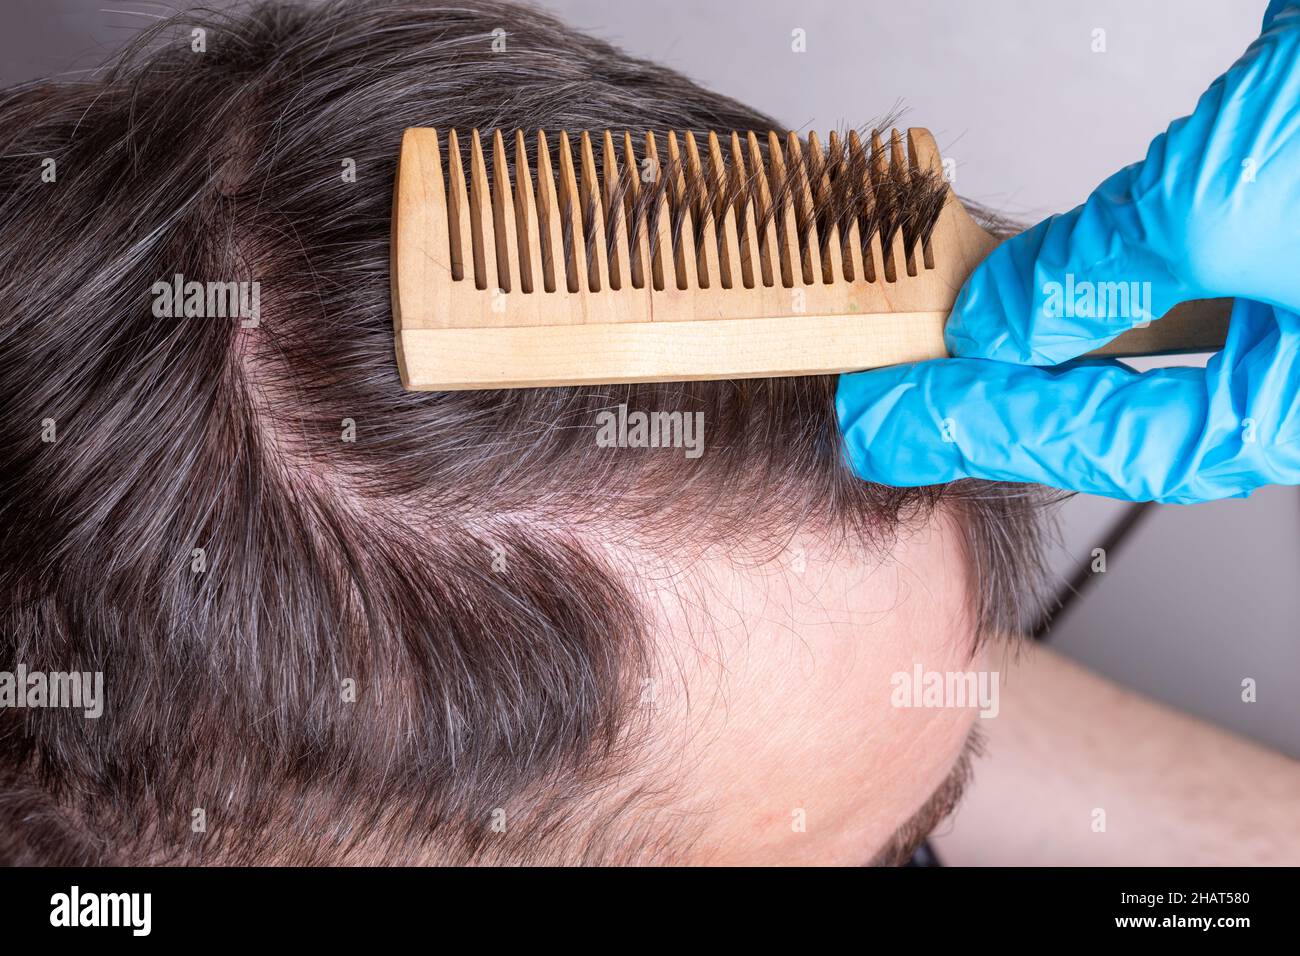 Calvitie humaine ou perte de cheveux - un médecin en gants médicaux bleus  examine les cheveux et le cuir chevelu d'un homme, gros plan, vue de  dessus.Le médecin utilise un peigne pour